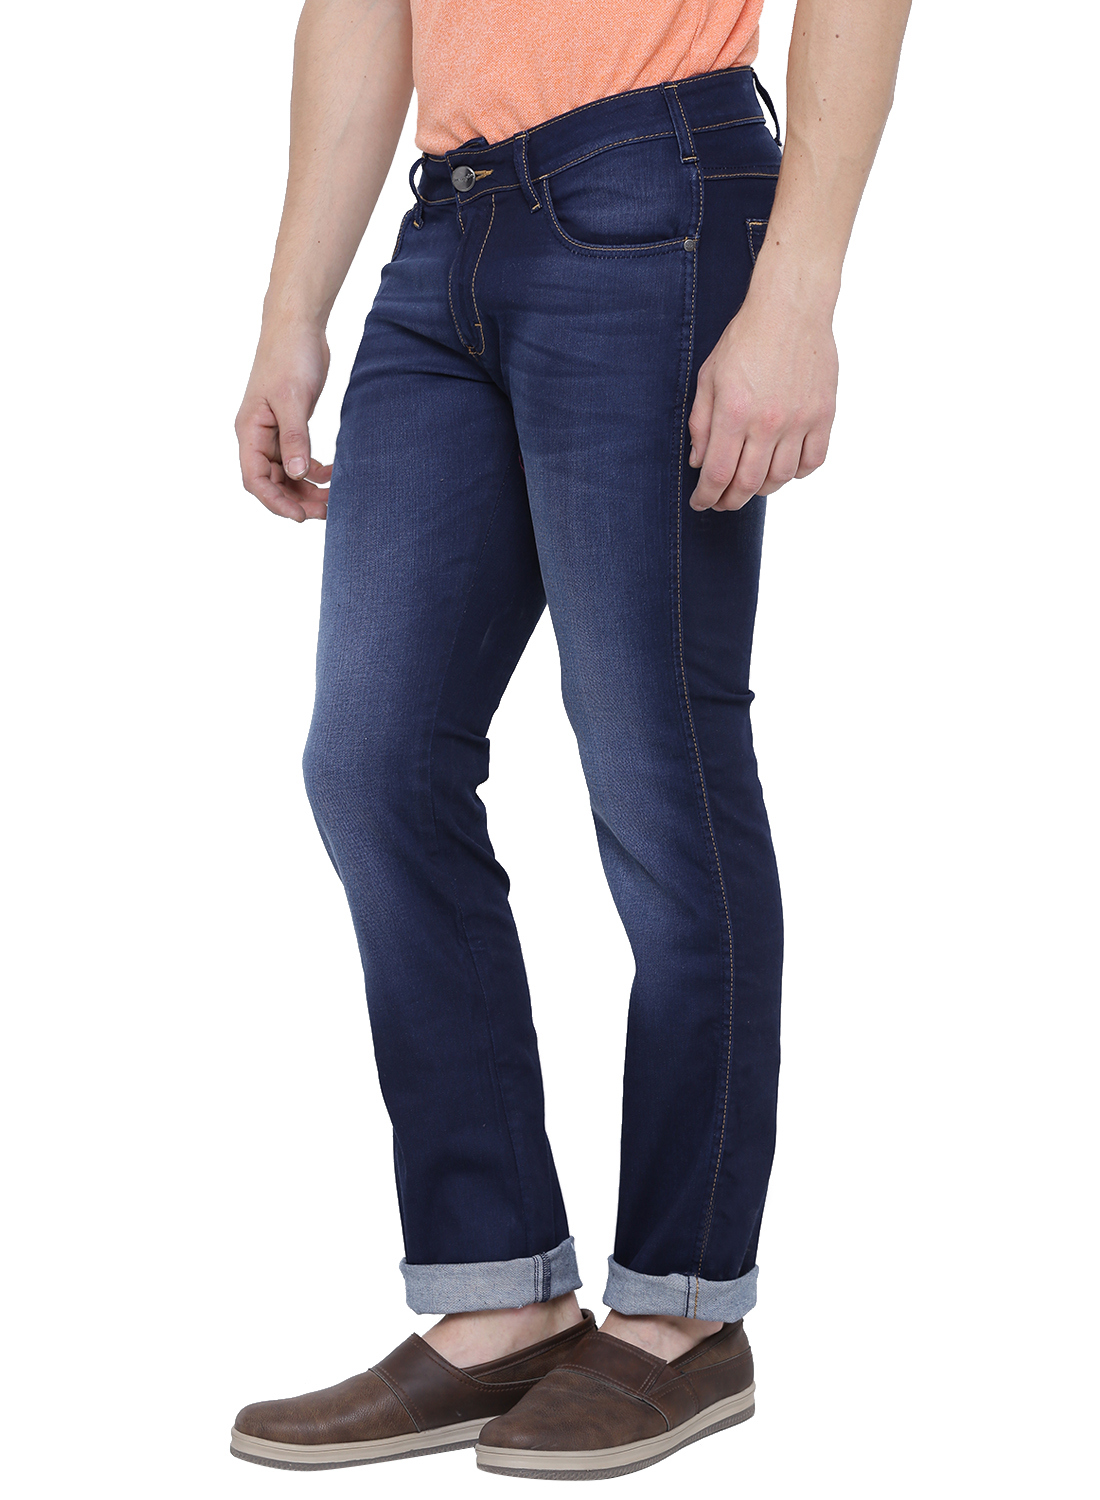 Buy Wrangler Blue Mid Rise Slim Fit Jeans For Men Online @ ₹1957 from ...